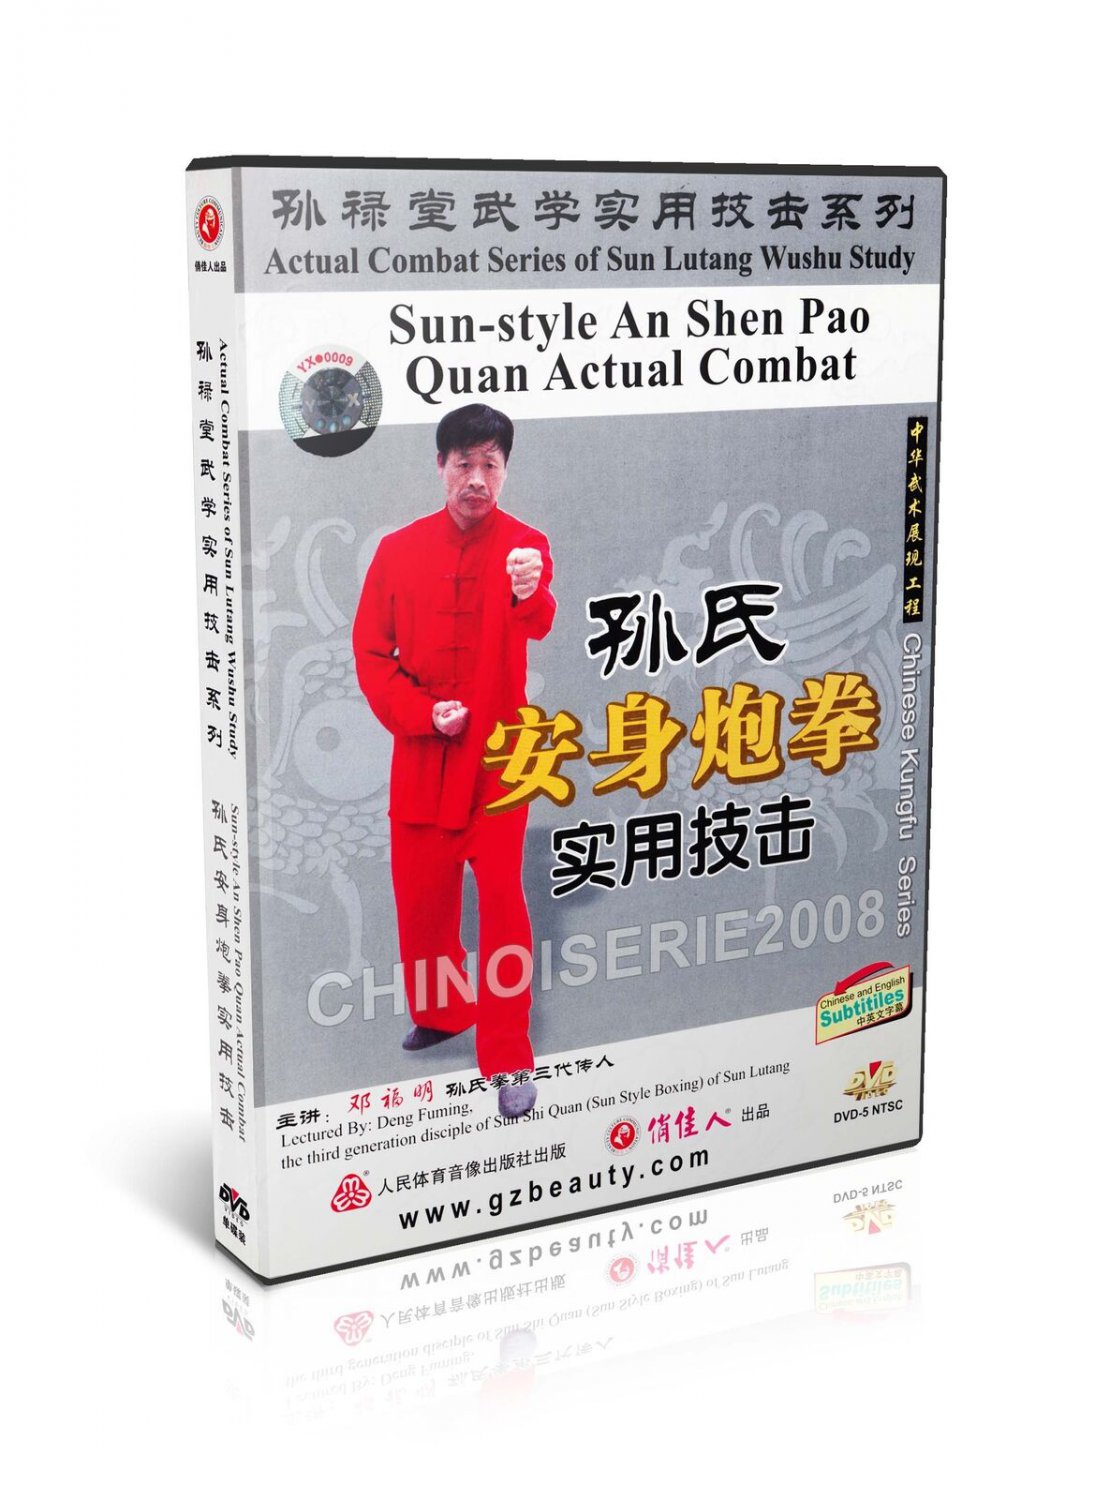 DW134-05 Sun Lutang Style Xingyi An Shen Pao Quan Actual Combat by Deng Fuming DVD